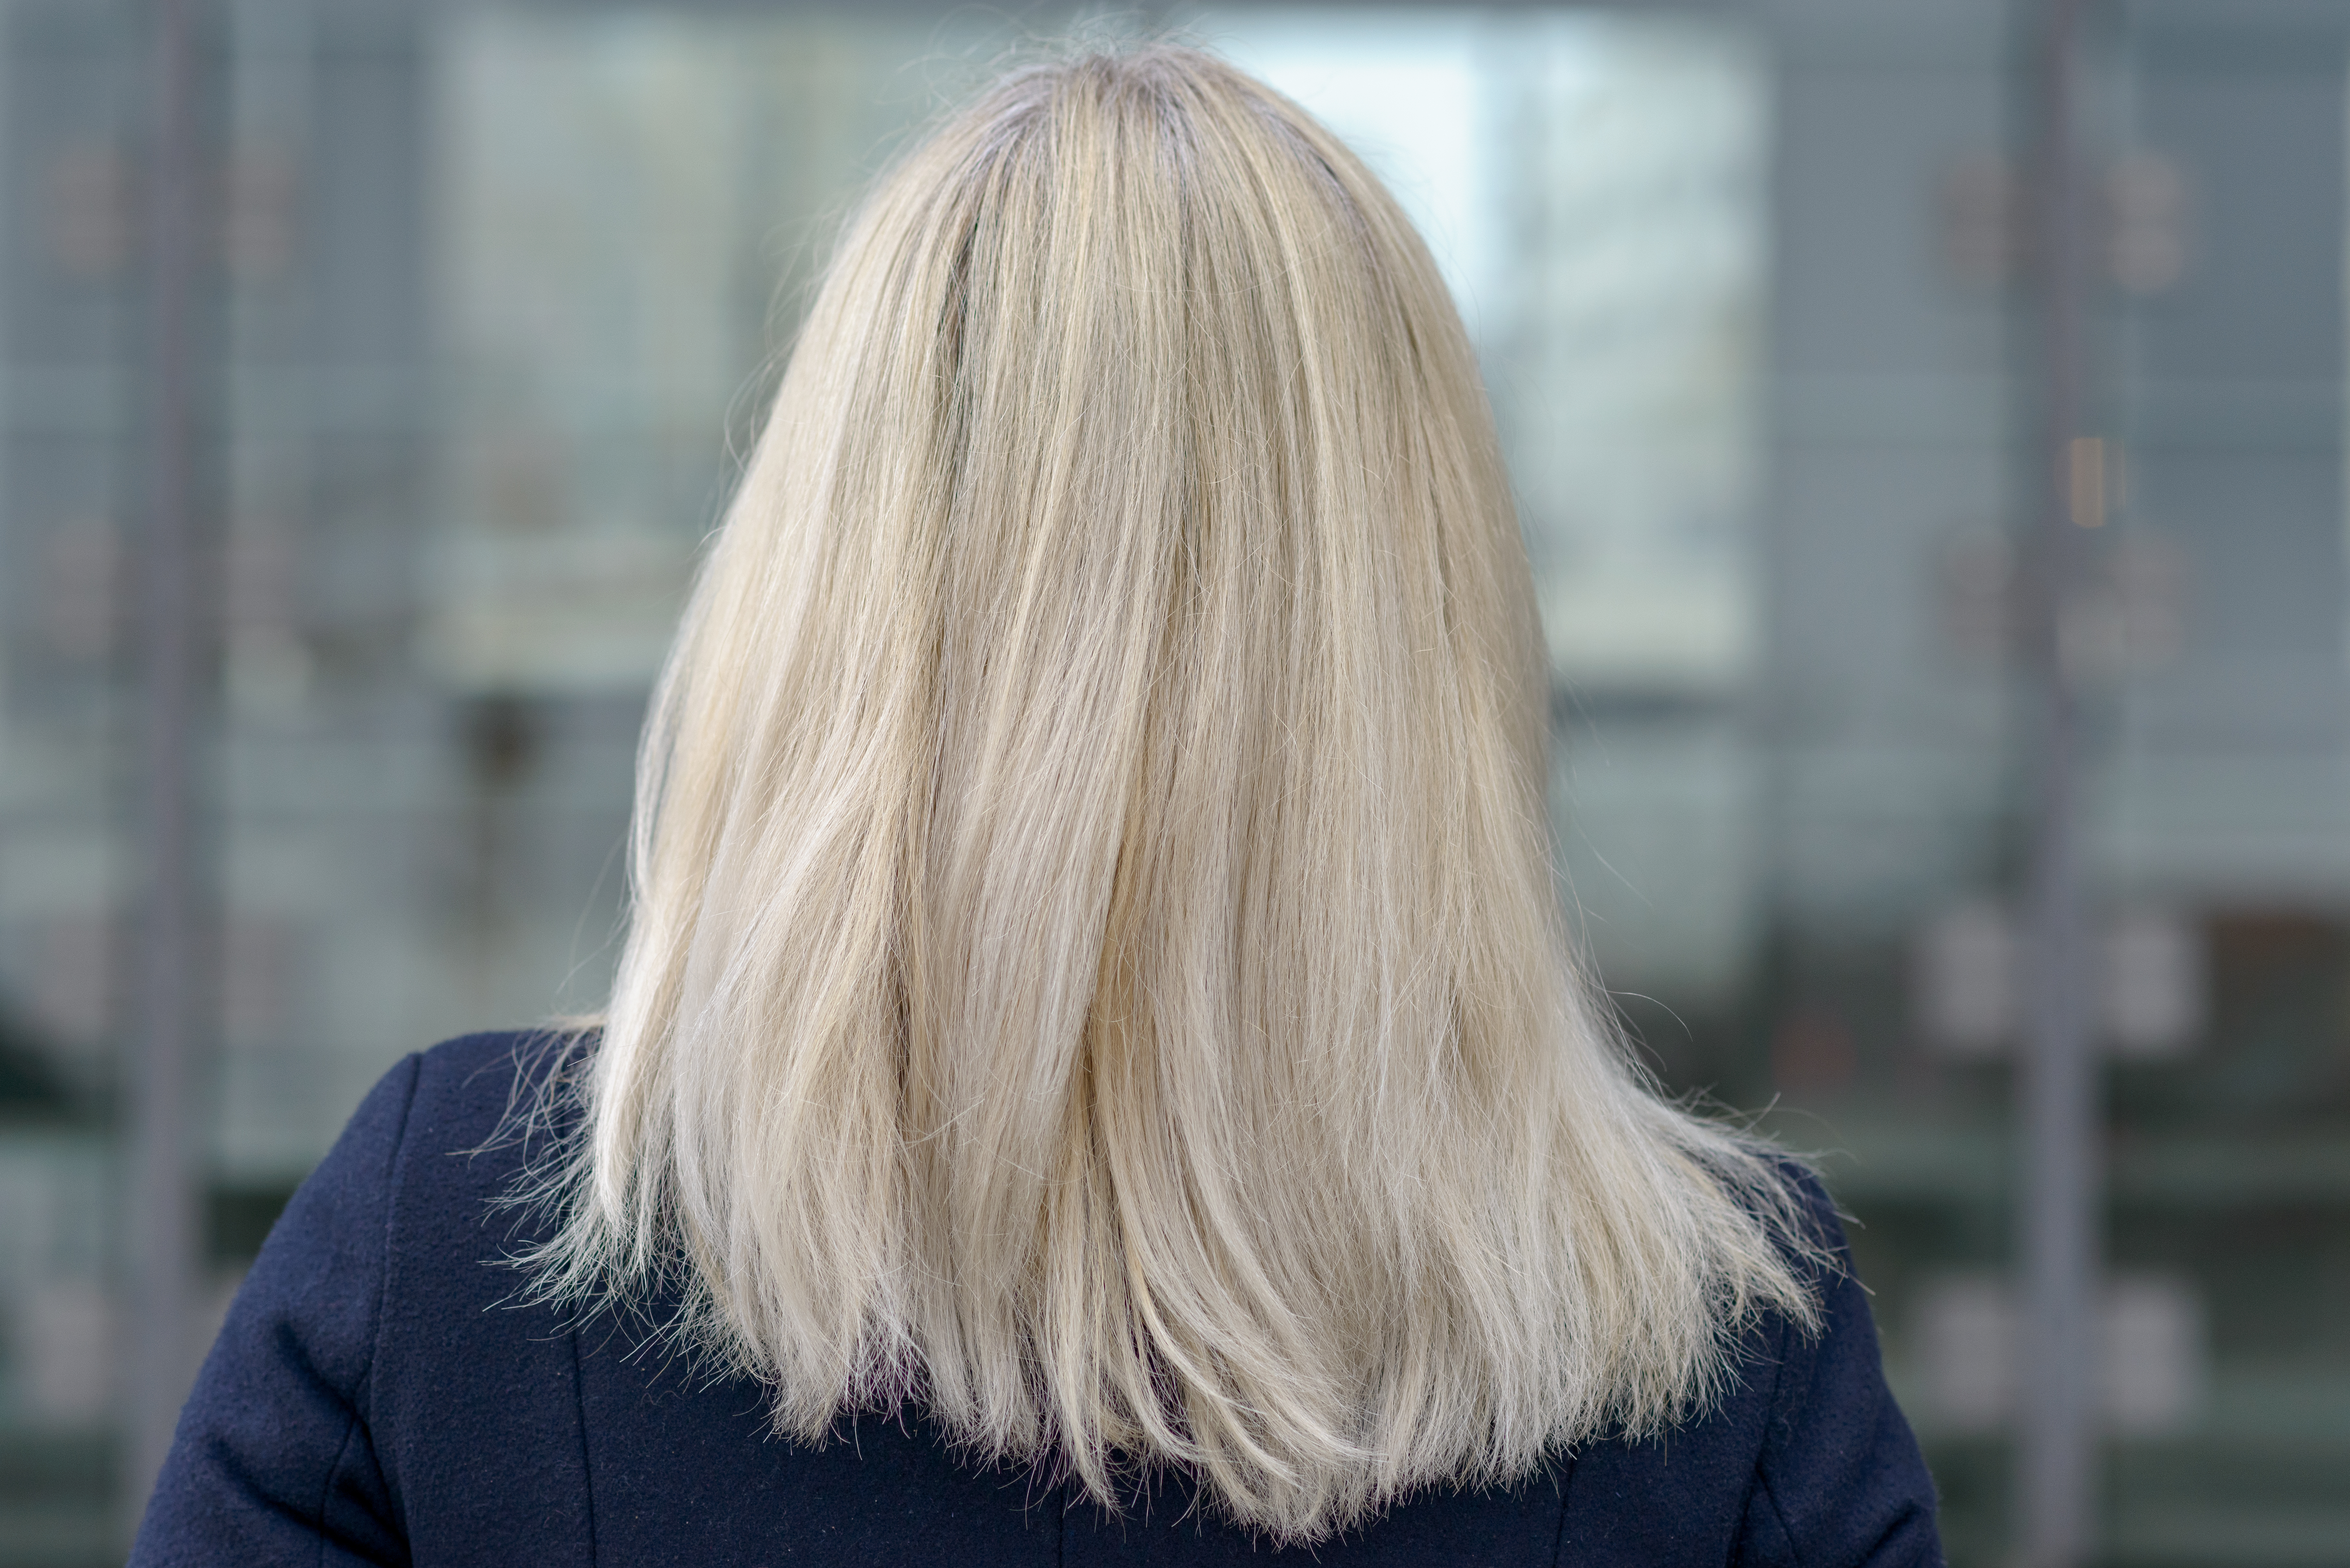 Vue arrière d'une femme aux cheveux blonds mi-longs | Source : Shutterstock